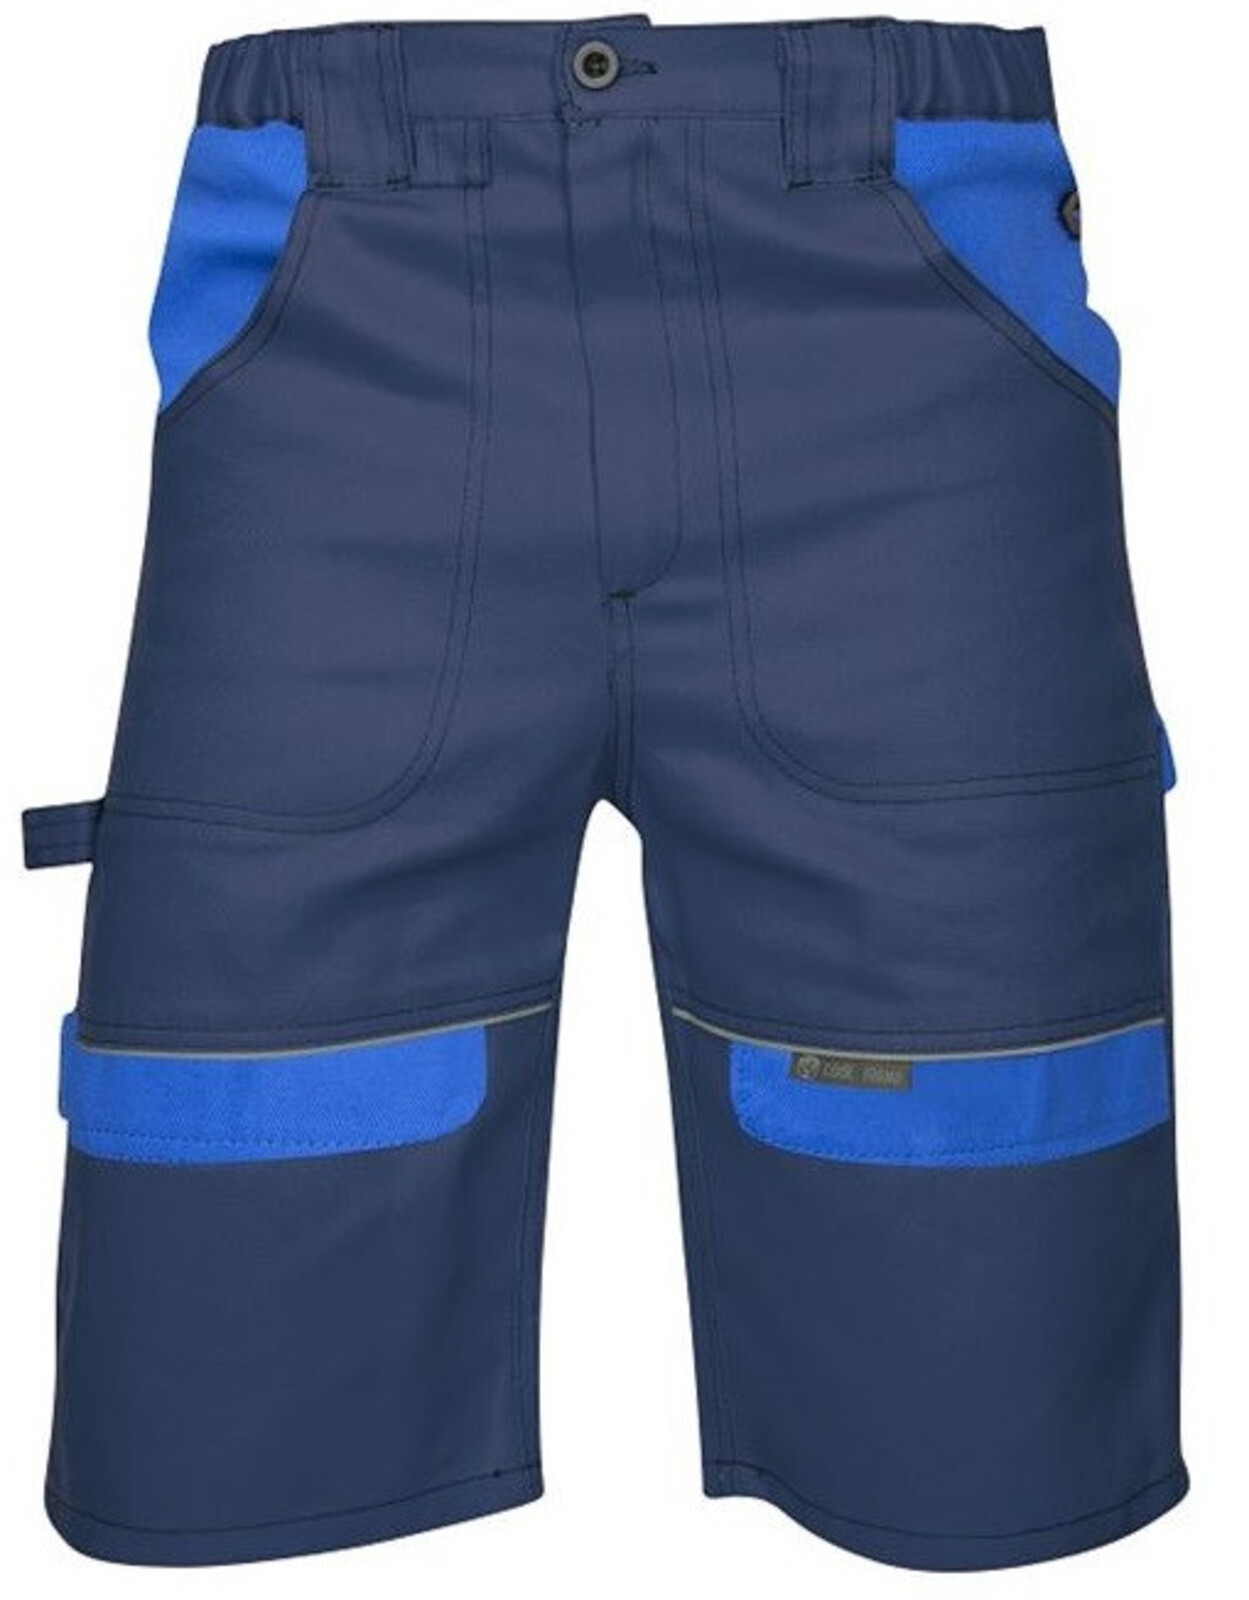 Pánske montérkové šortky Ardon Cool Trend - veľkosť: 60, farba: tmavomodrá/svetlomodrá